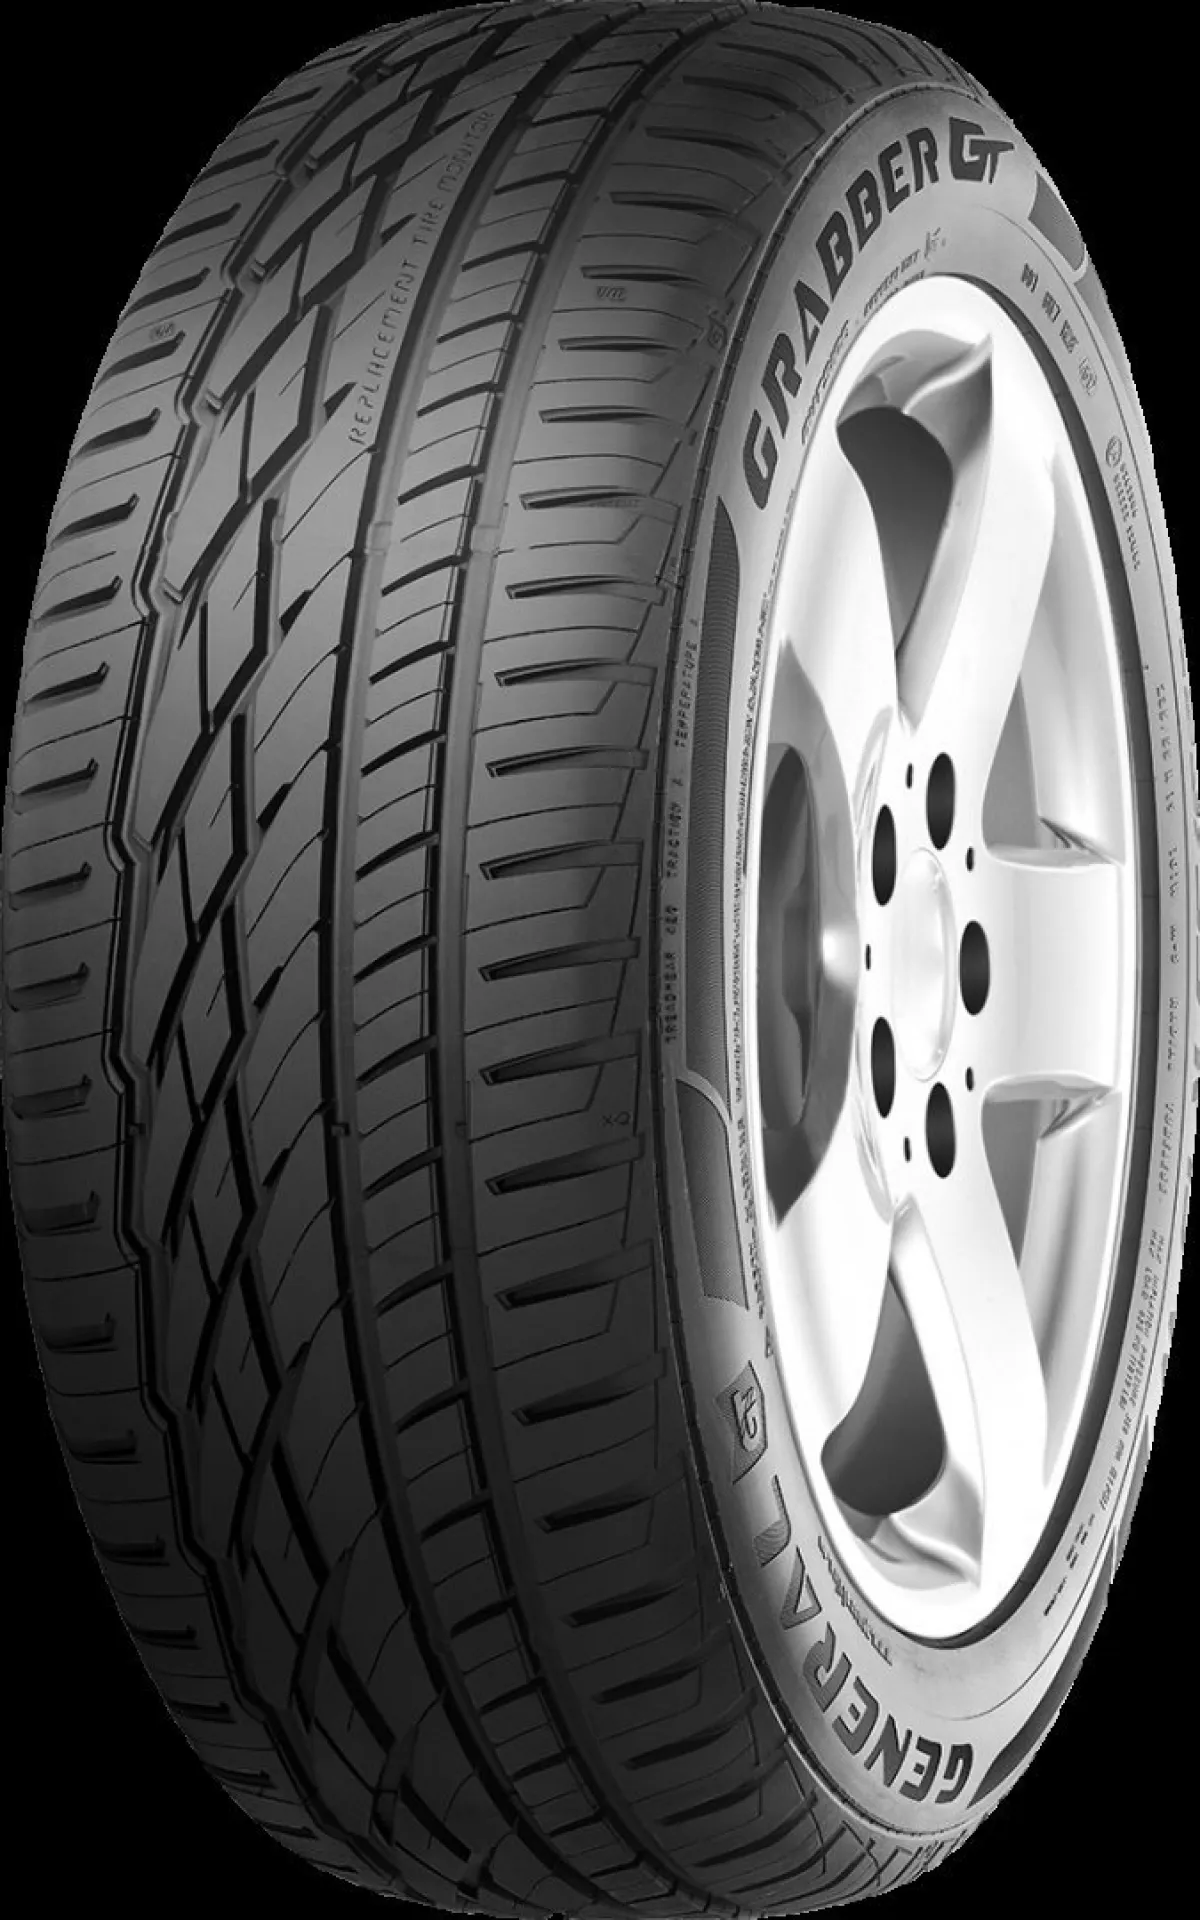 General Tire Grabber GT 235/70R16 106H FR